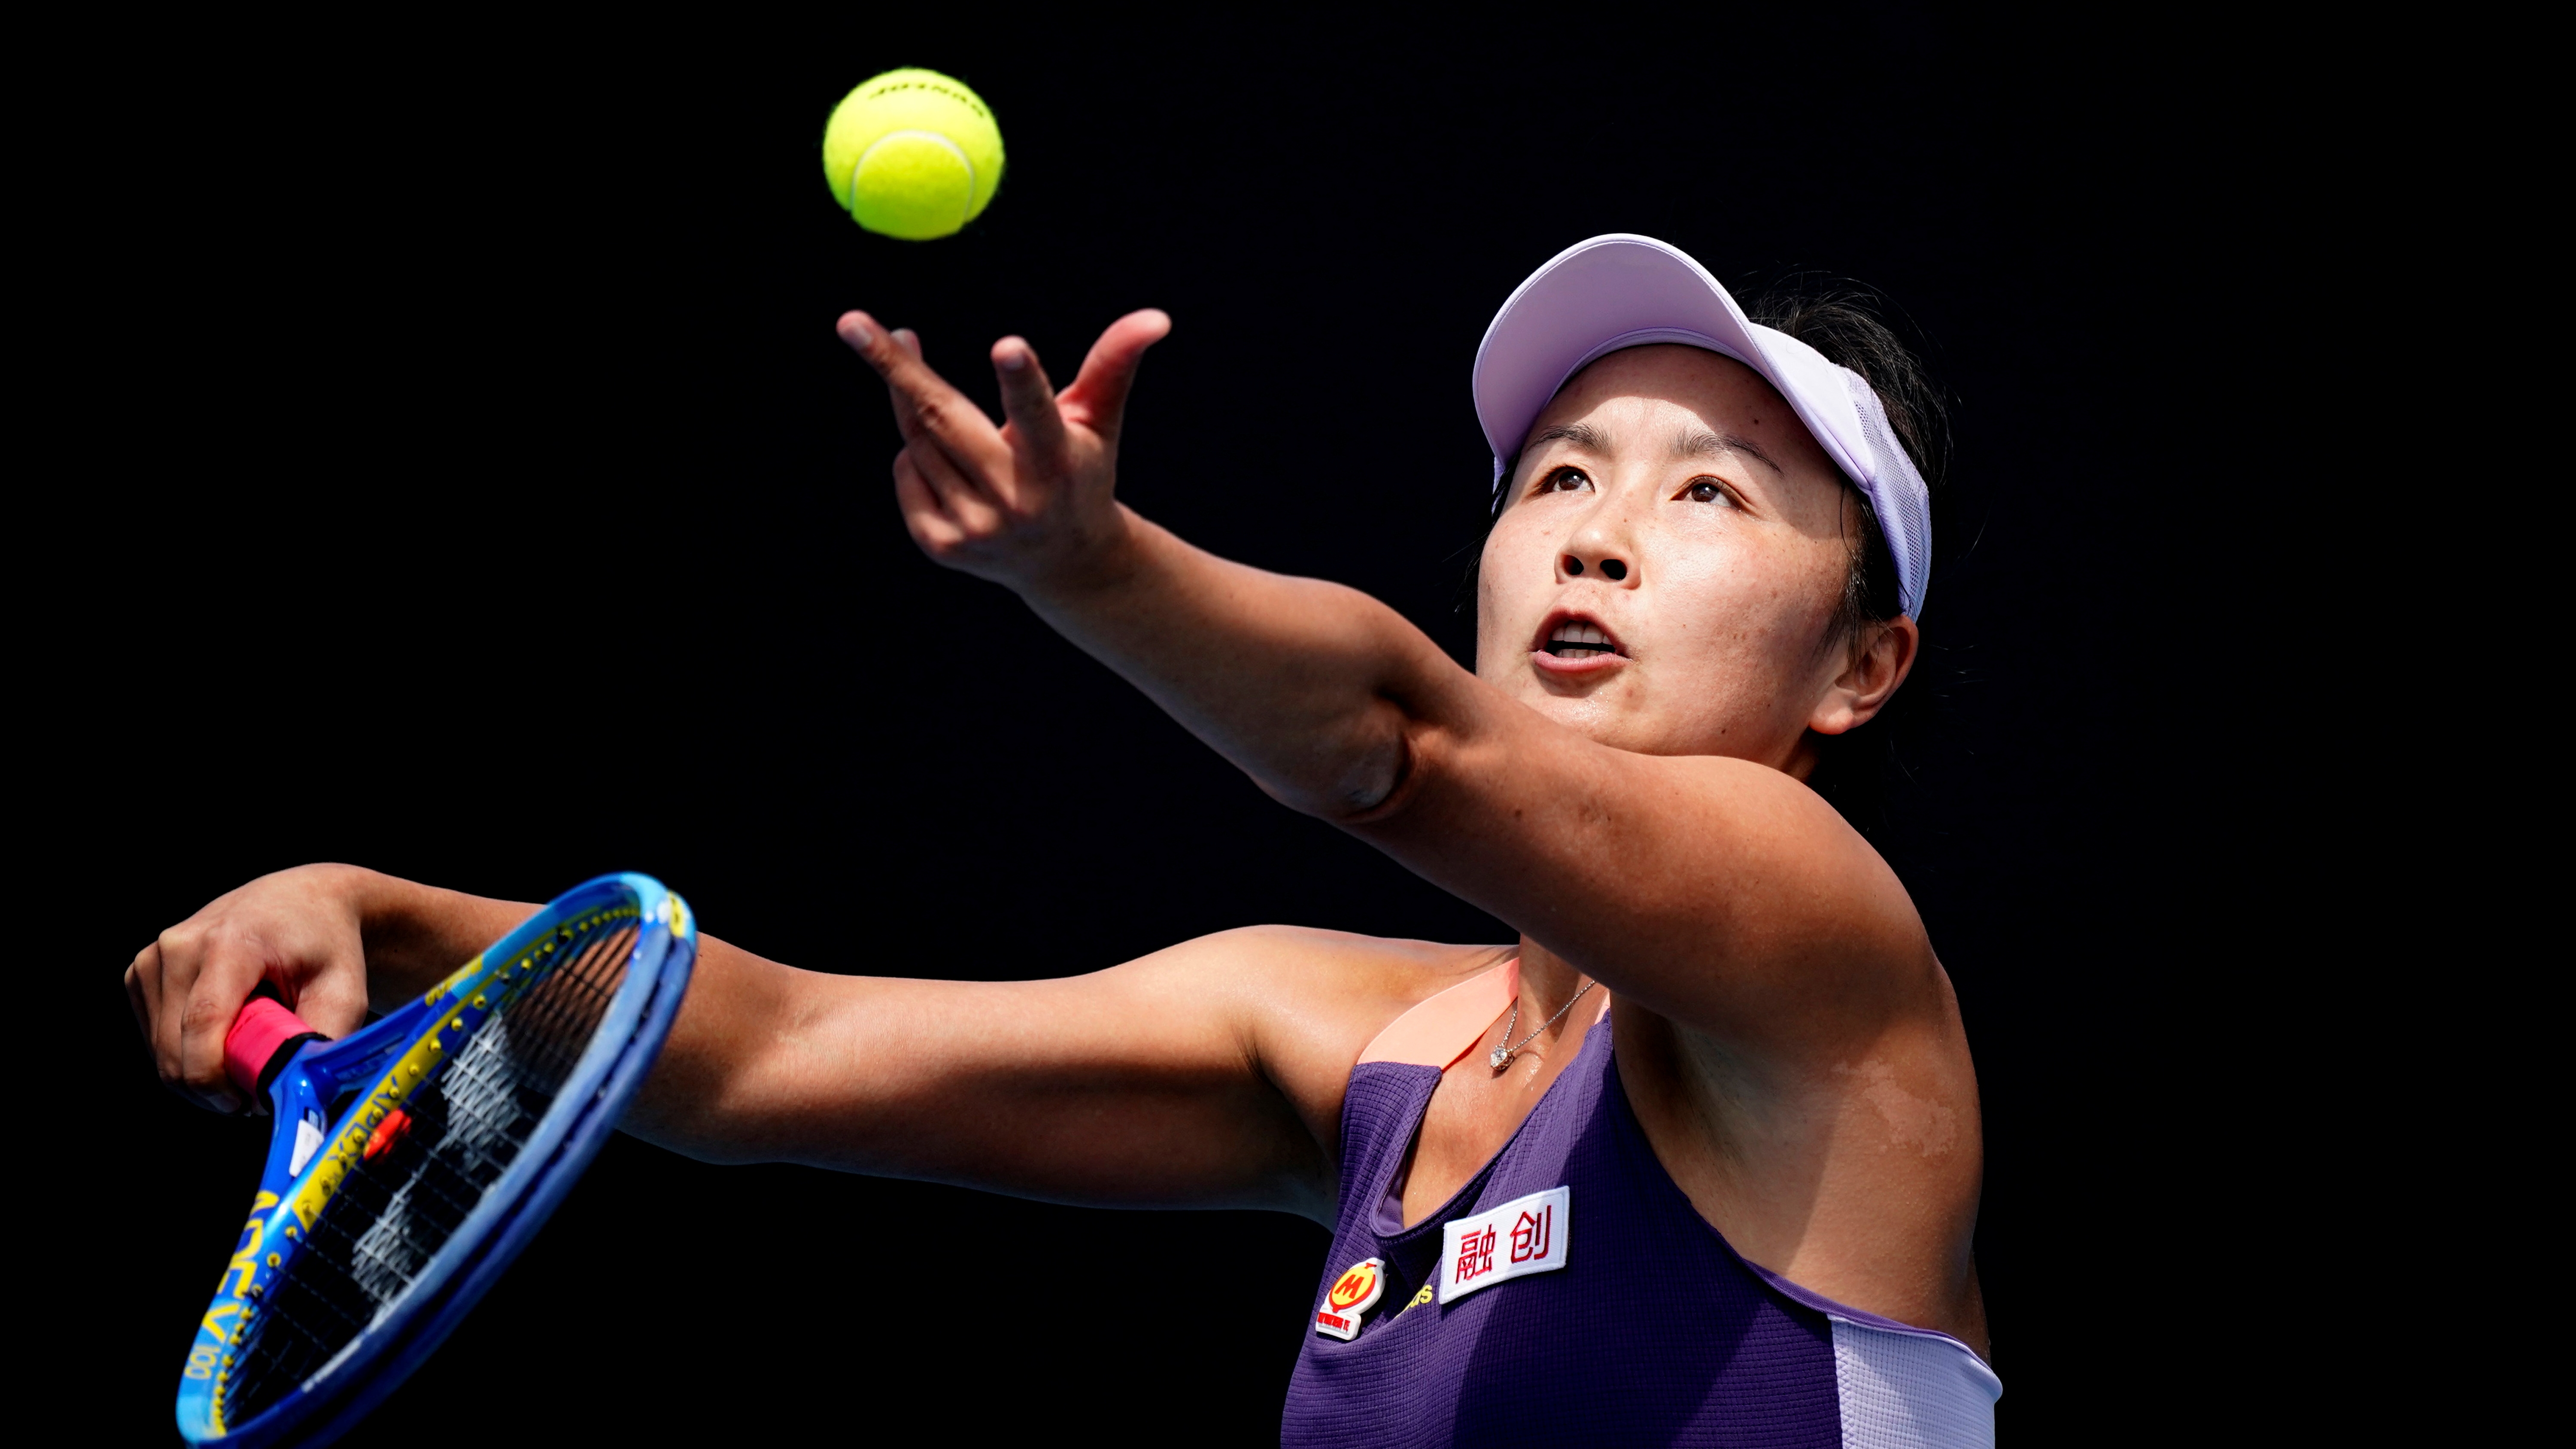 Un controversial correo electrónico de la tenista Peng Shuai profundizó las dudas sobre su misteriosa desaparición  